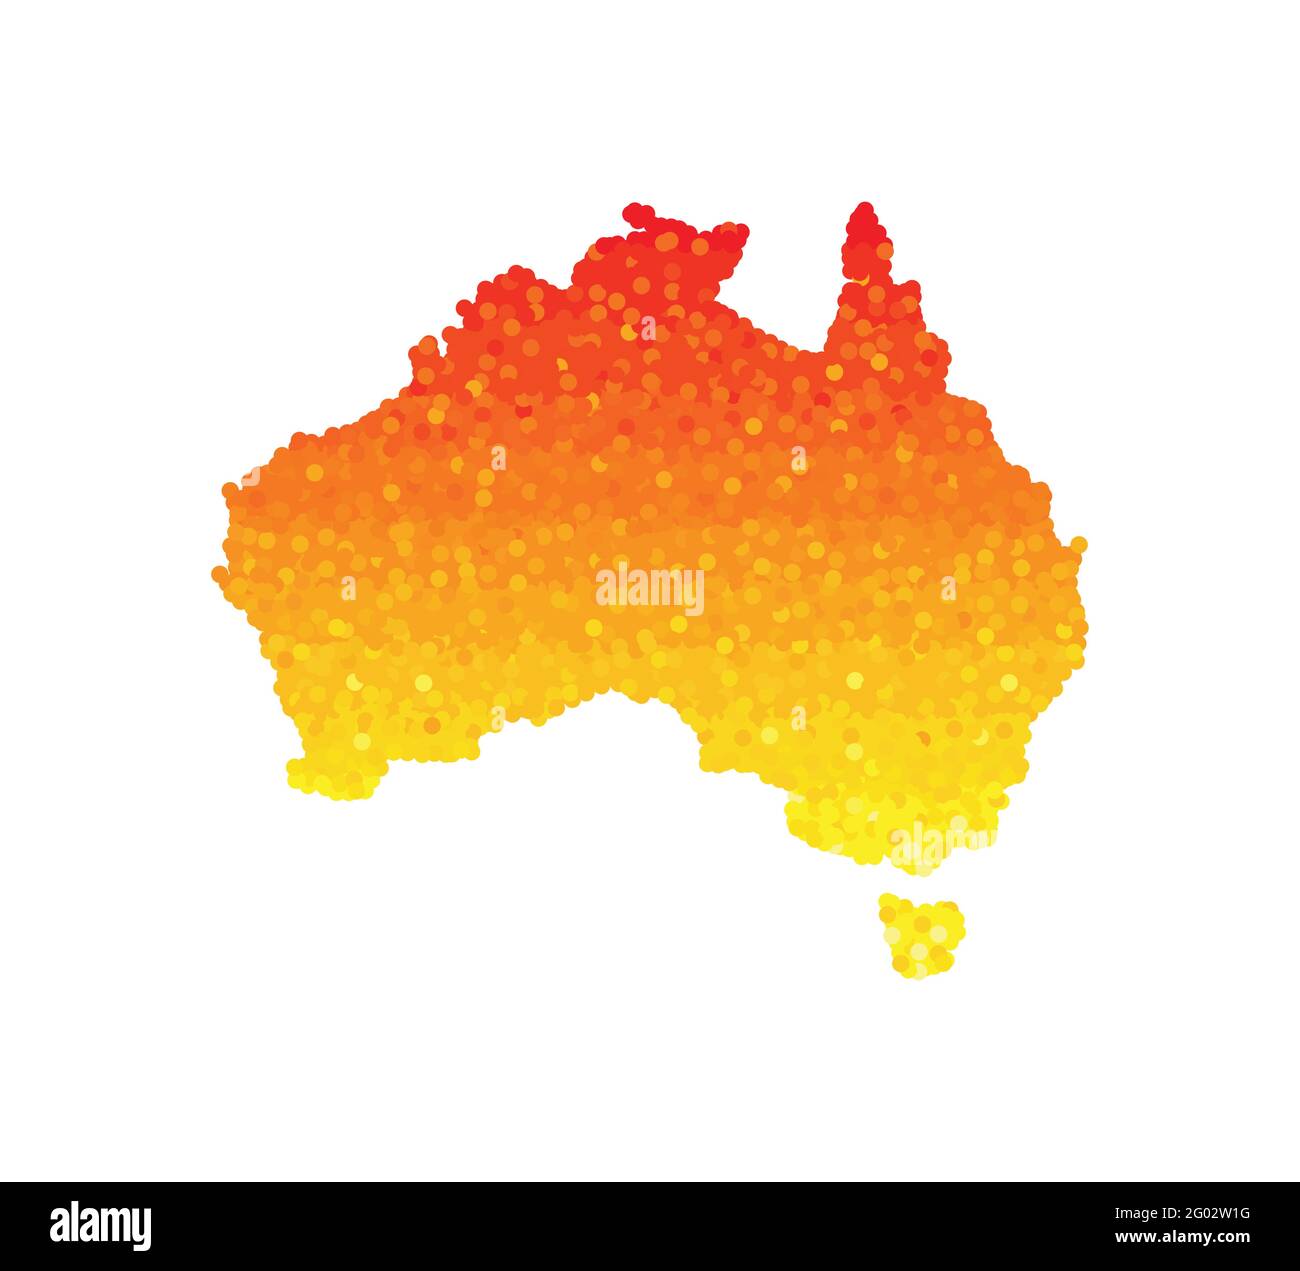 Illustration vectorielle isolée d'une carte simplifiée du continent australien et de la Tasmanie. Rouge orange, jaune. Feux de brousse comme catastrophe en 2020. Dangero Illustration de Vecteur